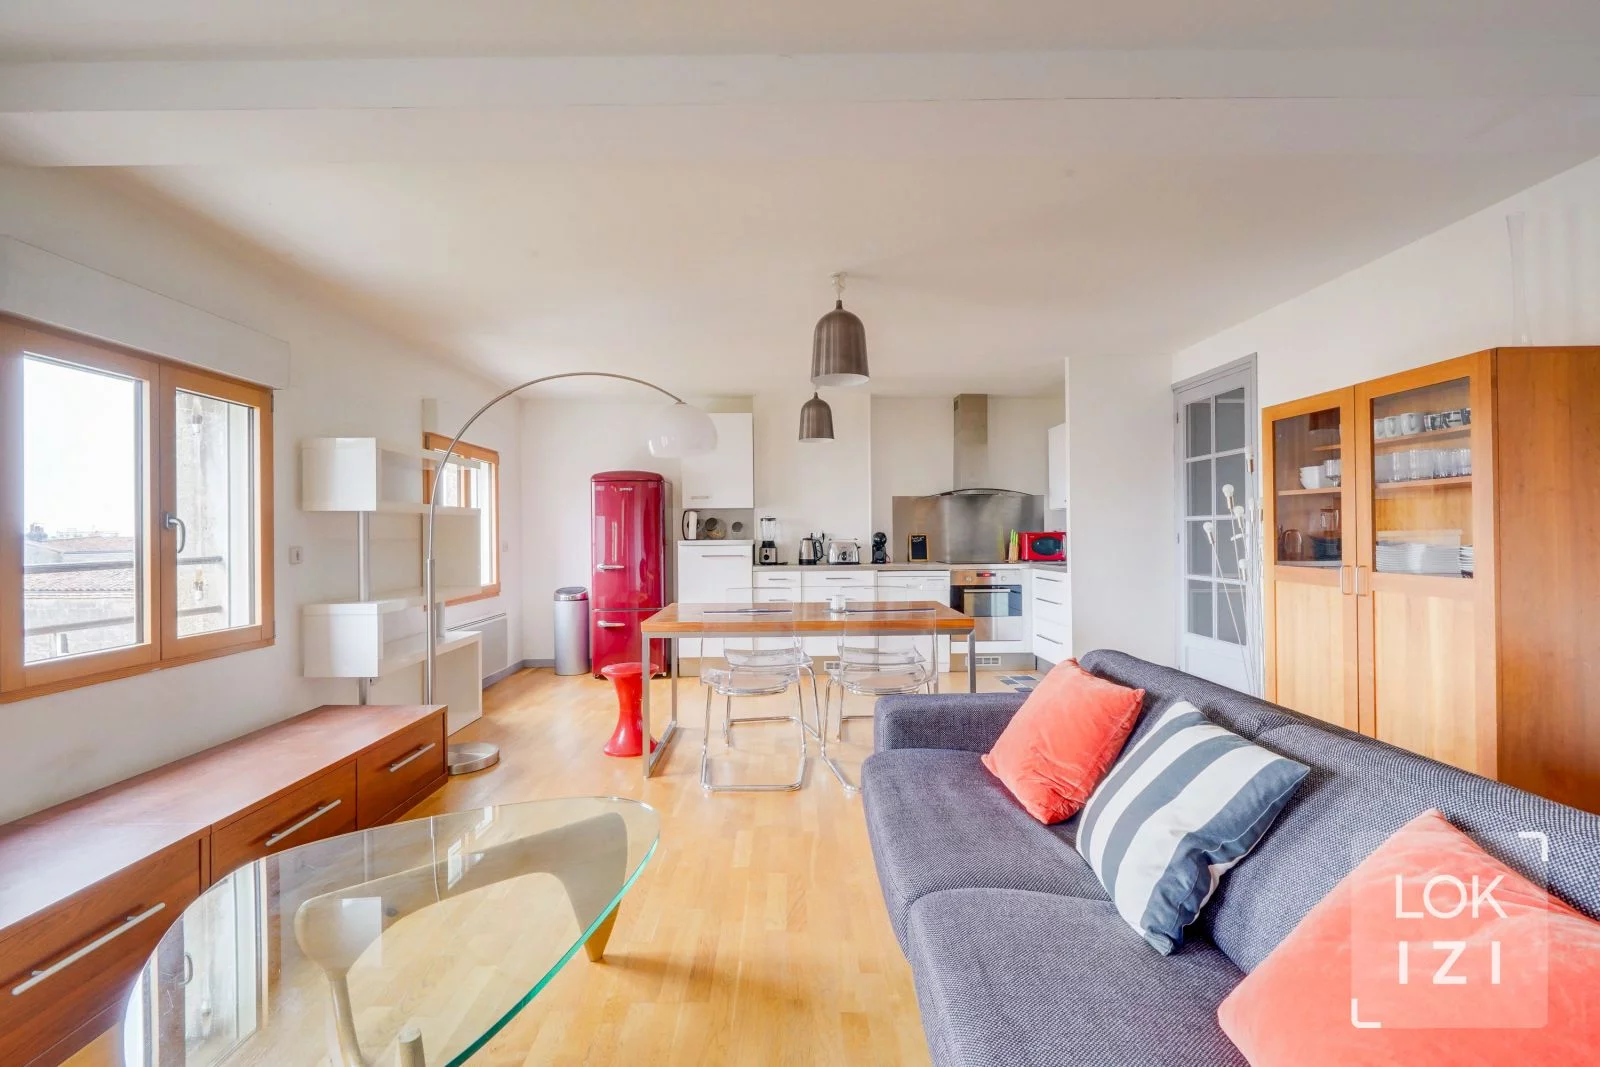 Location appartement meublé 4 pièces 95m² (Bordeaux - Barrière du Médoc)